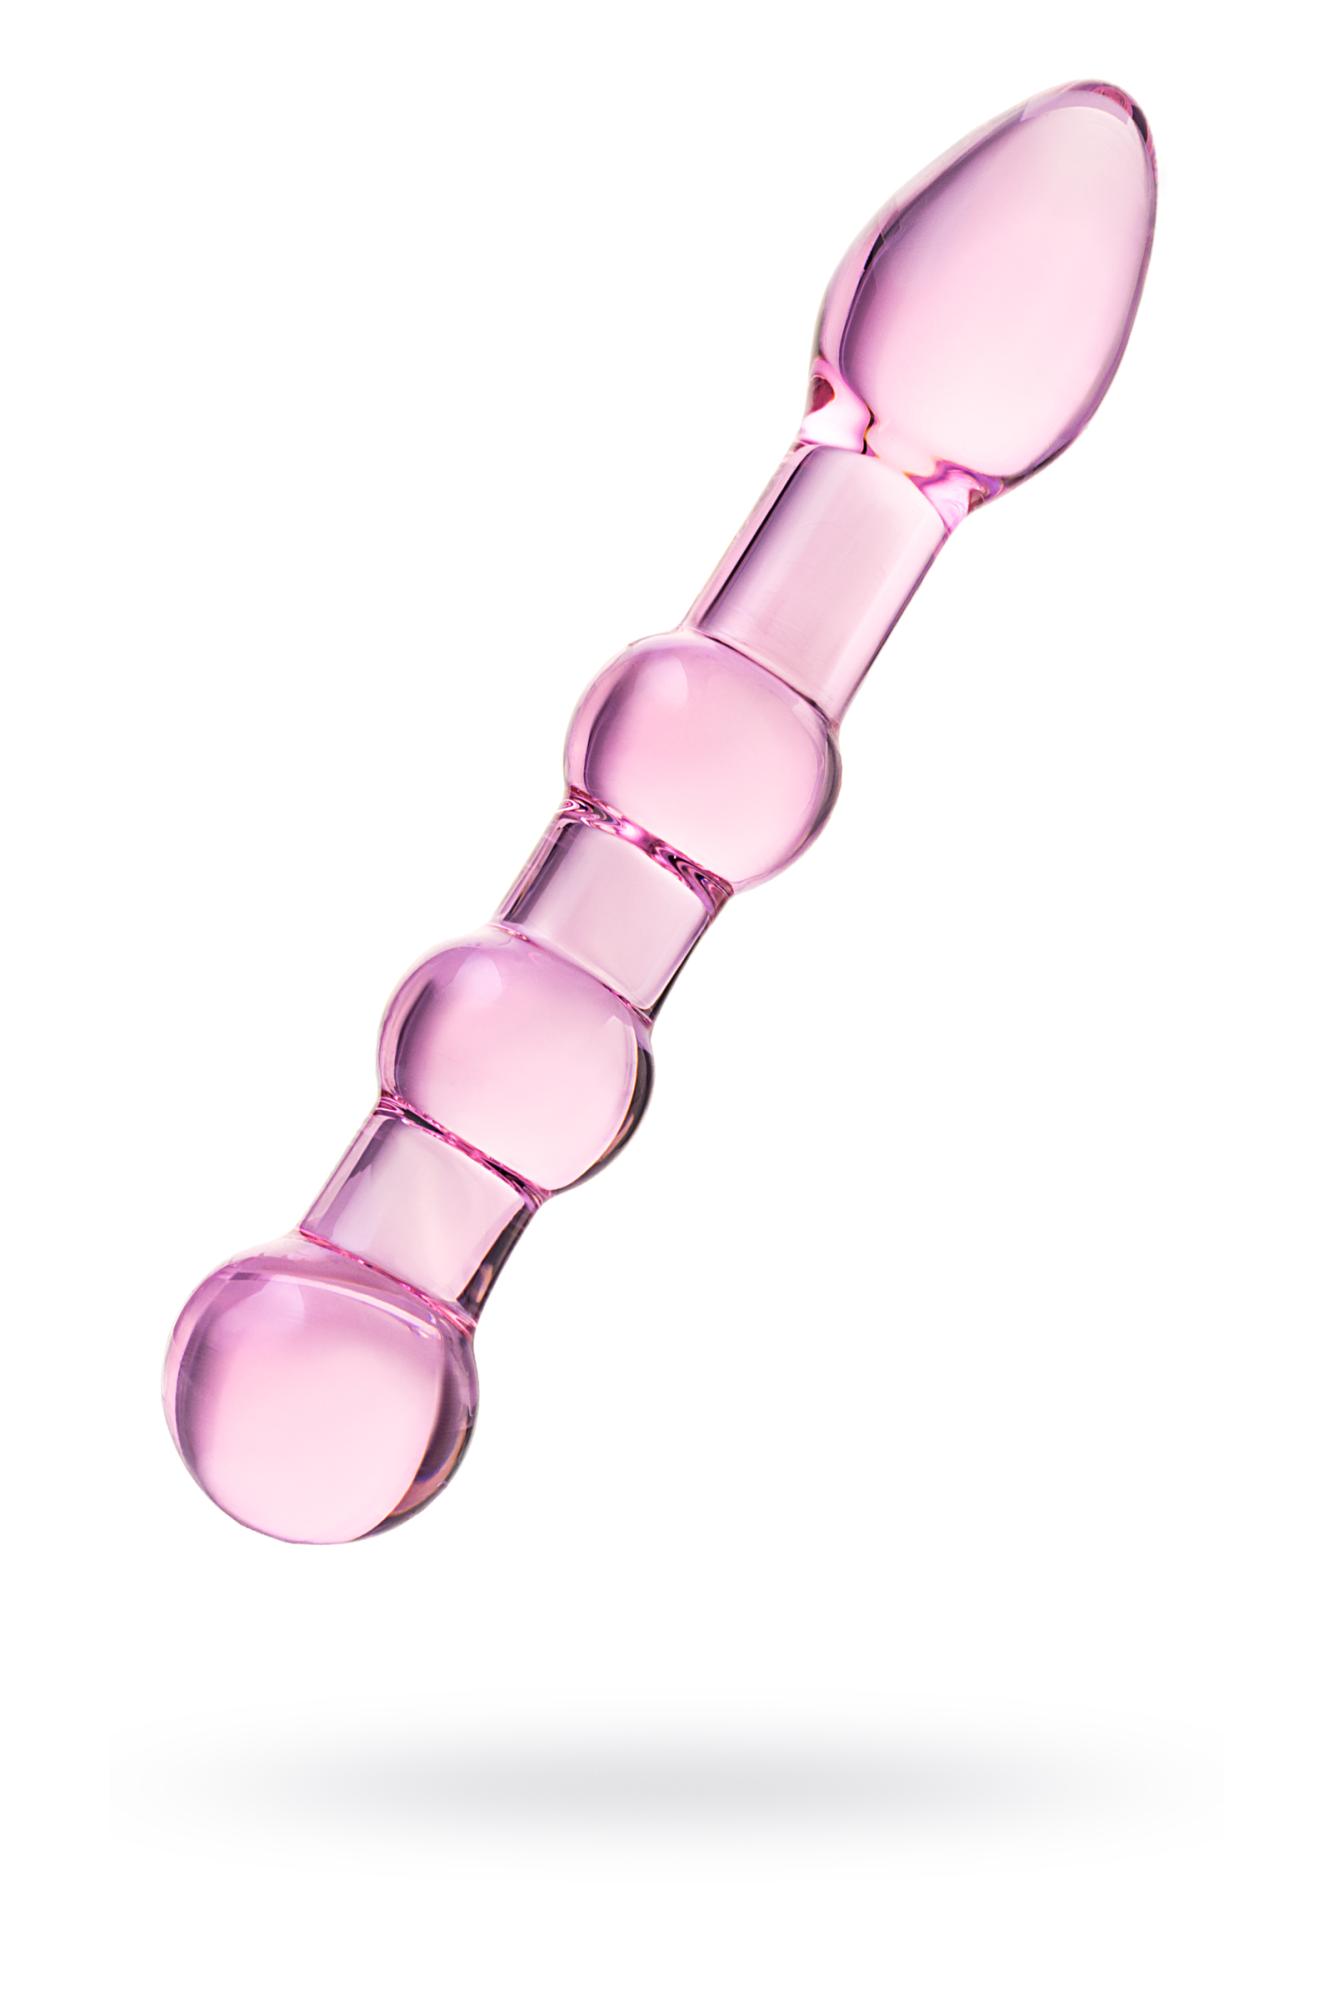 Sexus Glass - Двусторонний фаллоимитатор, 18 см (розовый) - фото 1